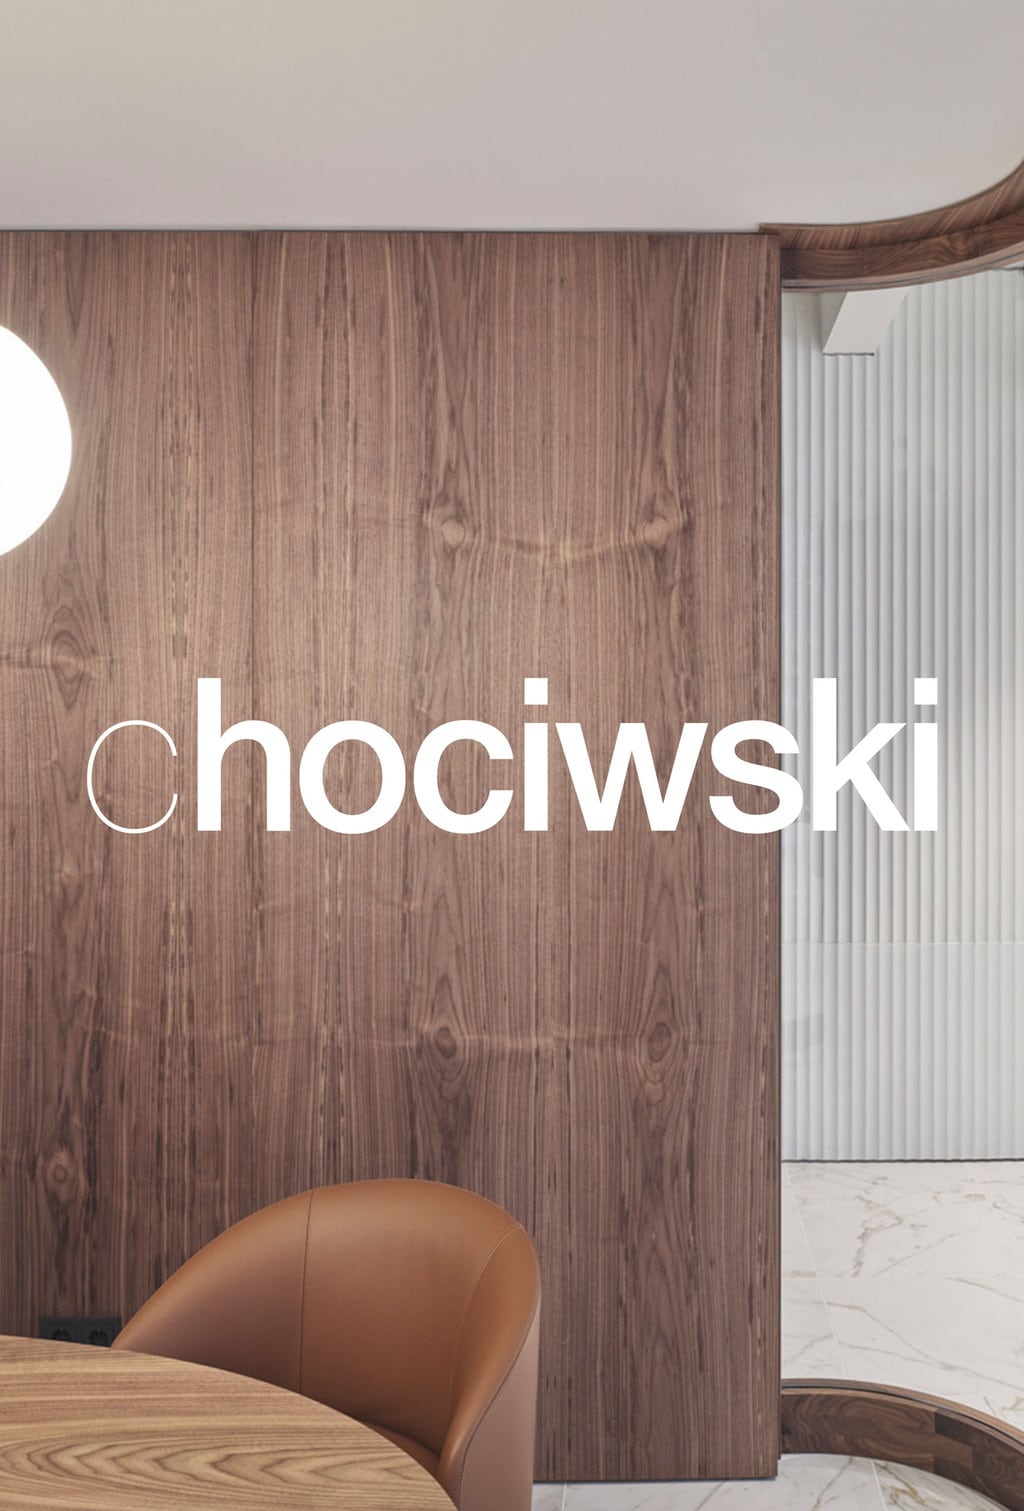 chociwski-logo-architektur_06